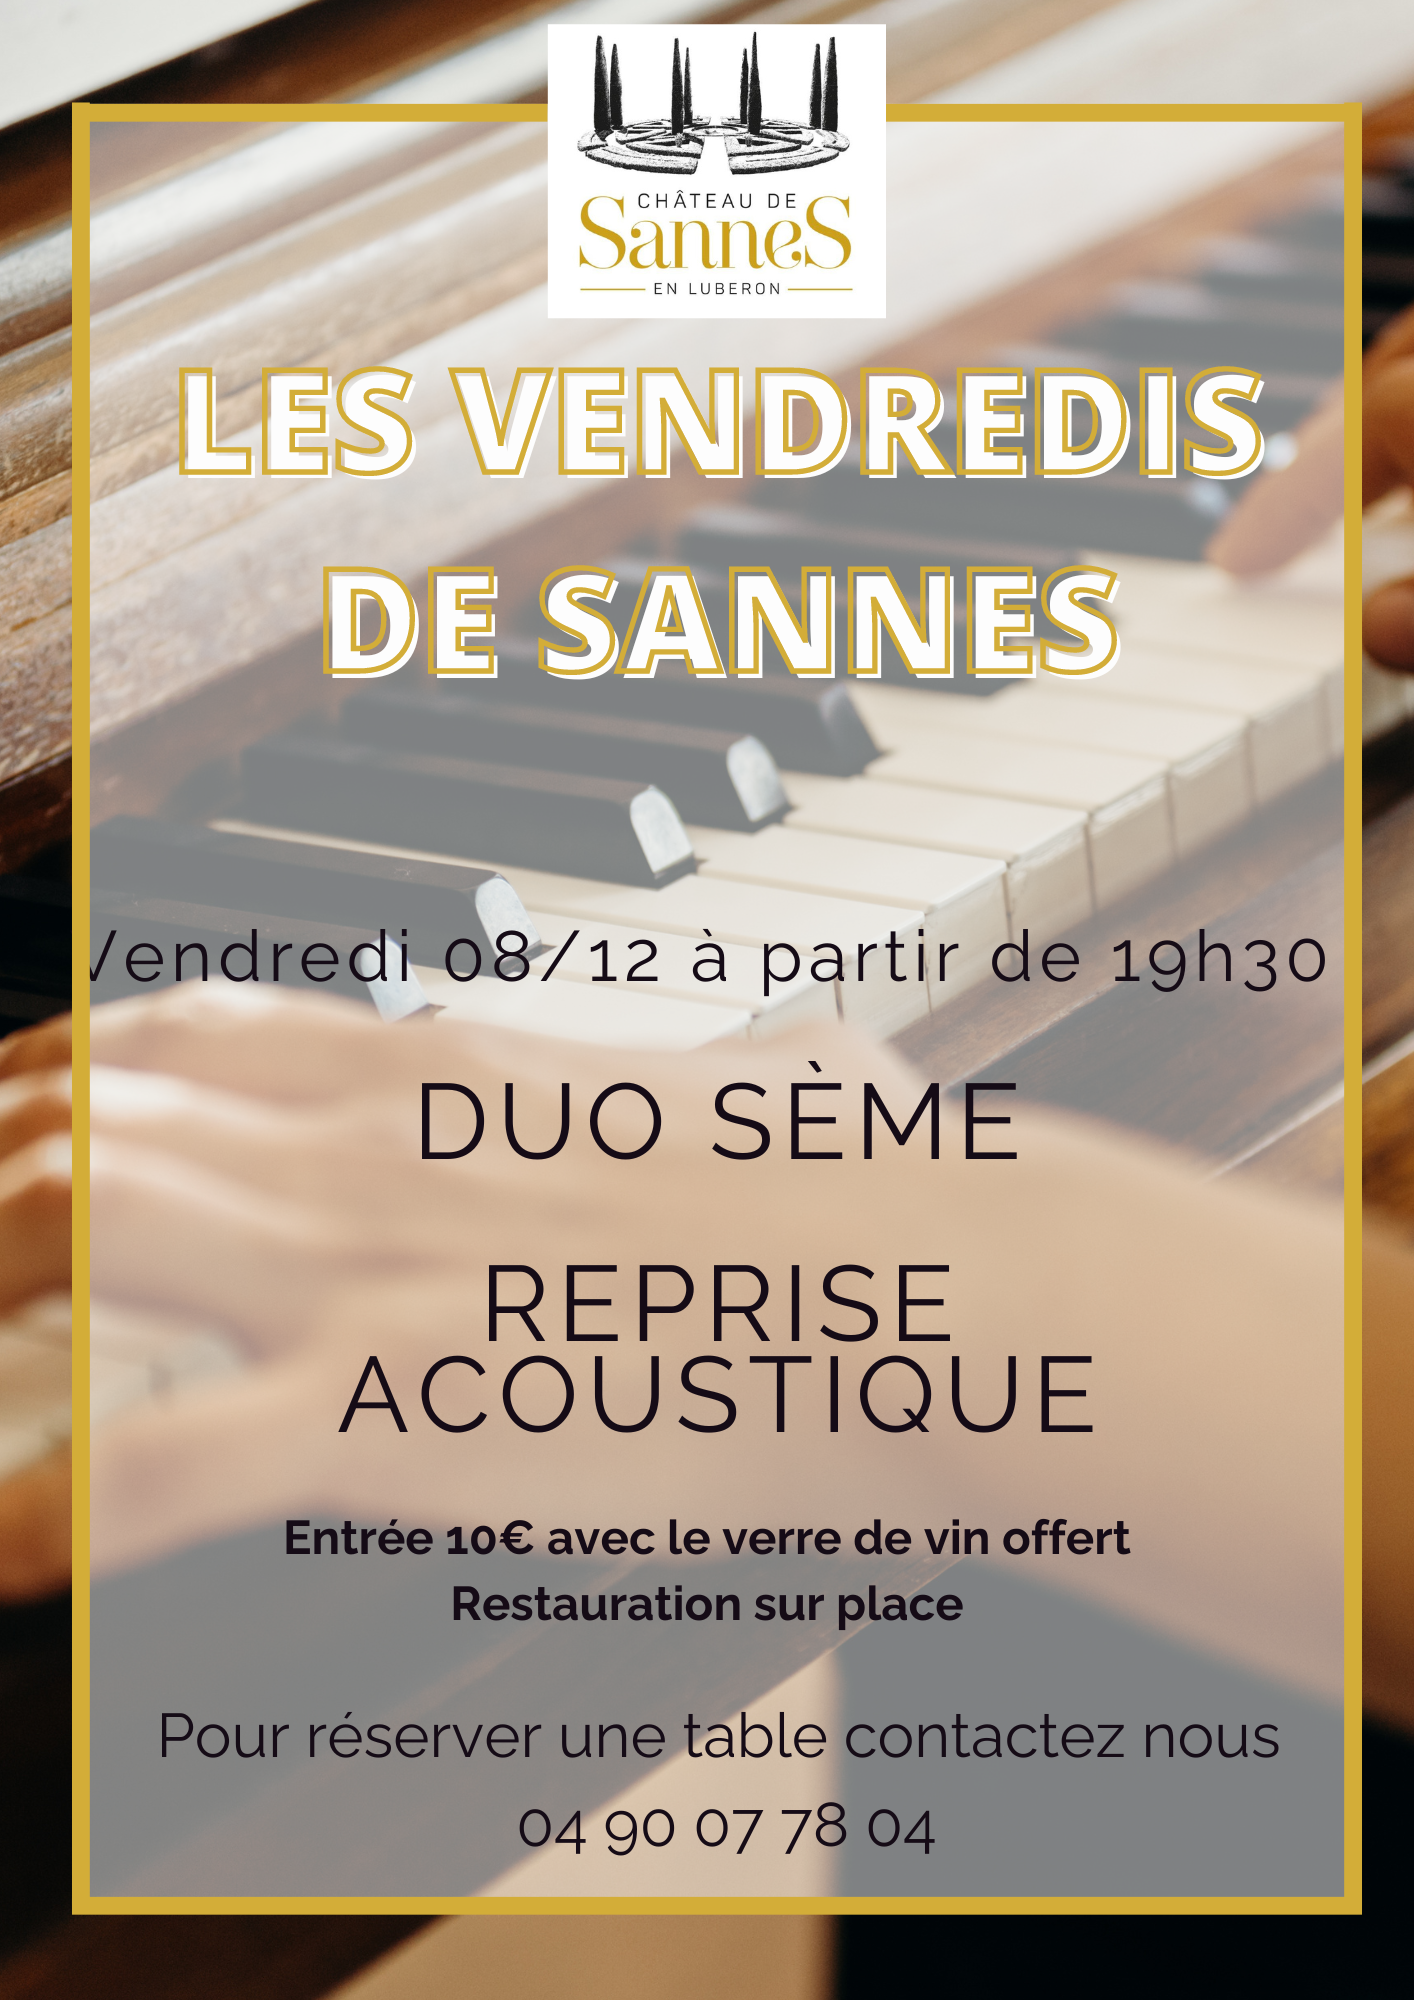 Concert Chateau de sannes vendredi 8 décembre Duo Sème